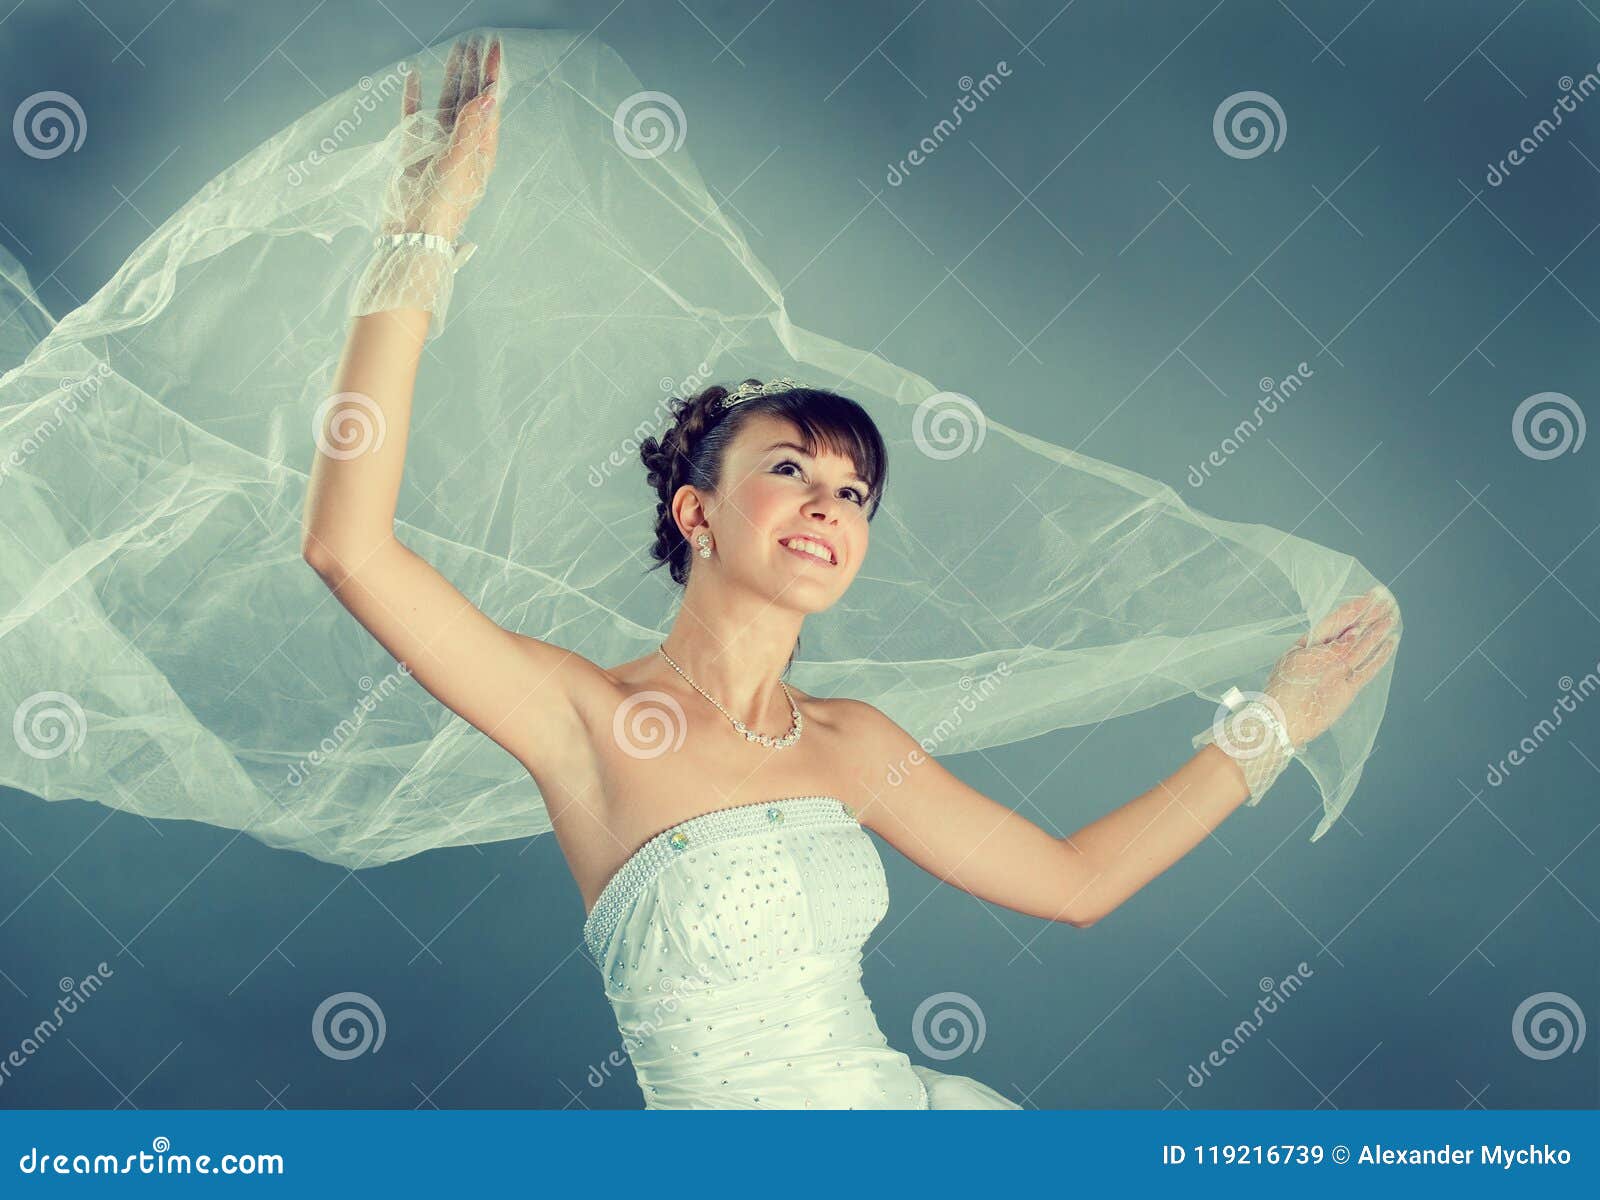 新娘礼服穿戴的高雅婚礼白色. 秀丽年轻新娘在高雅白色婚礼礼服灰色演播室背景中穿戴了